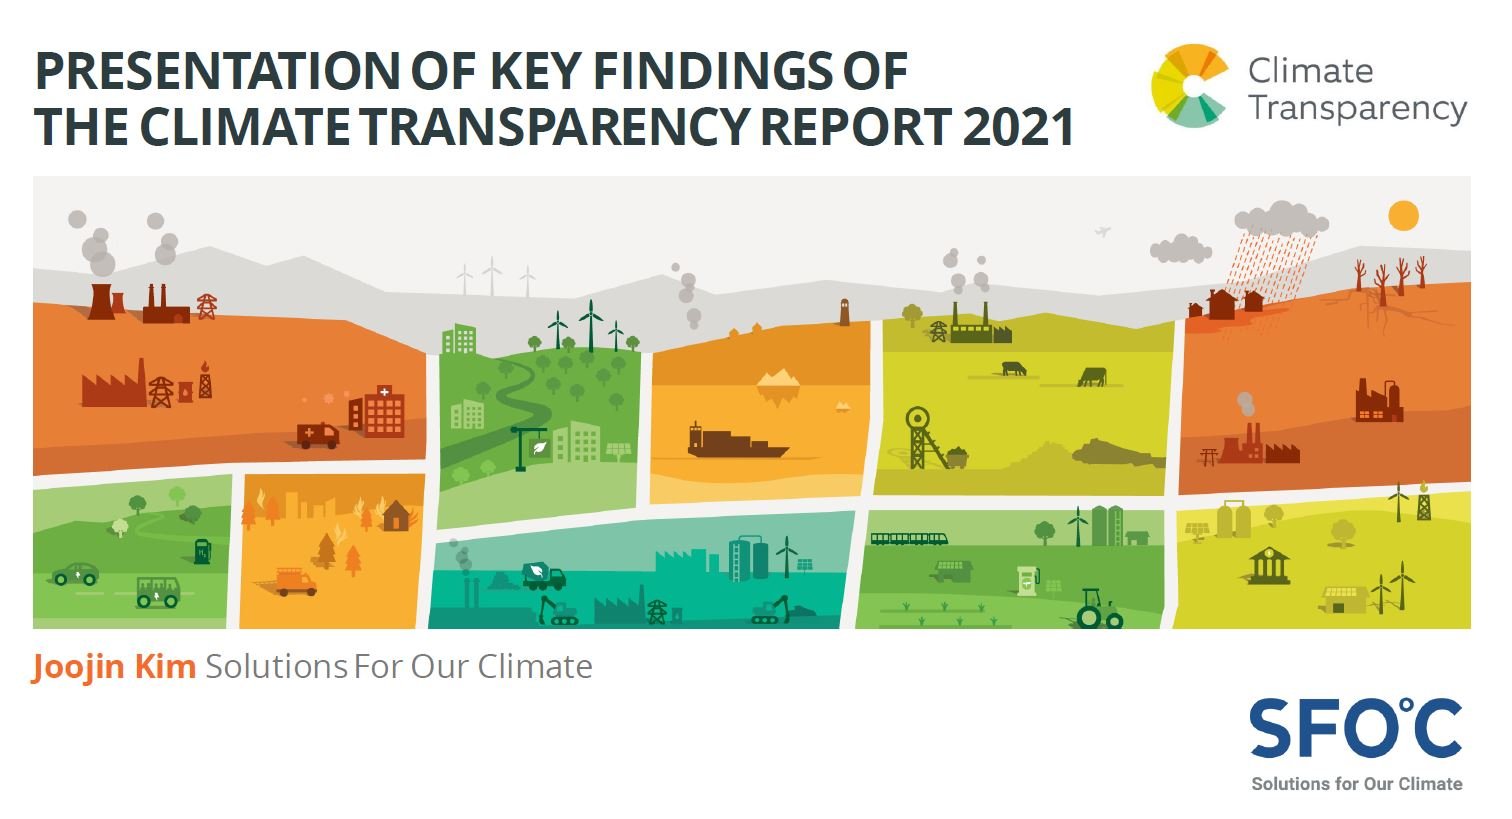 [COP26 한국 홍보관] 2021 기후투명성 보고서 주요 연구 결과와 시사점